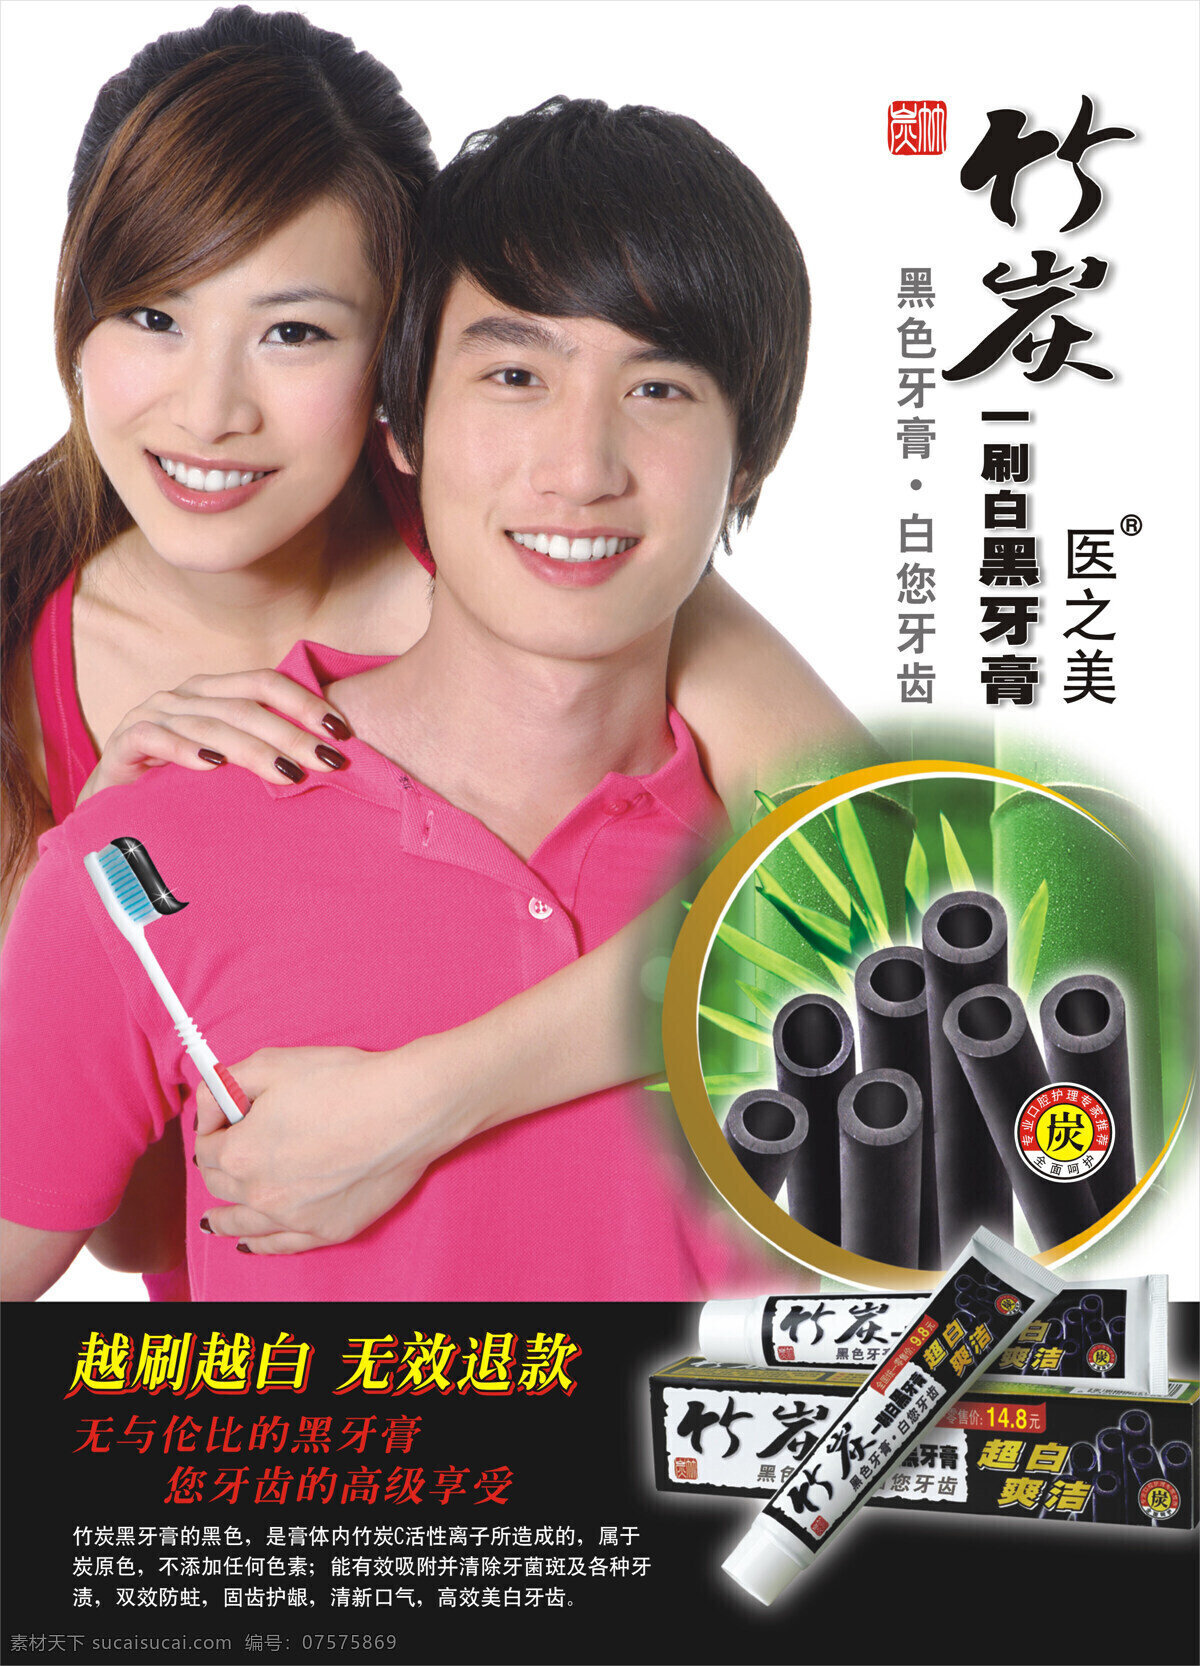 牙膏 广告 设计图库 牙膏广告 竹炭 海报 其他海报设计